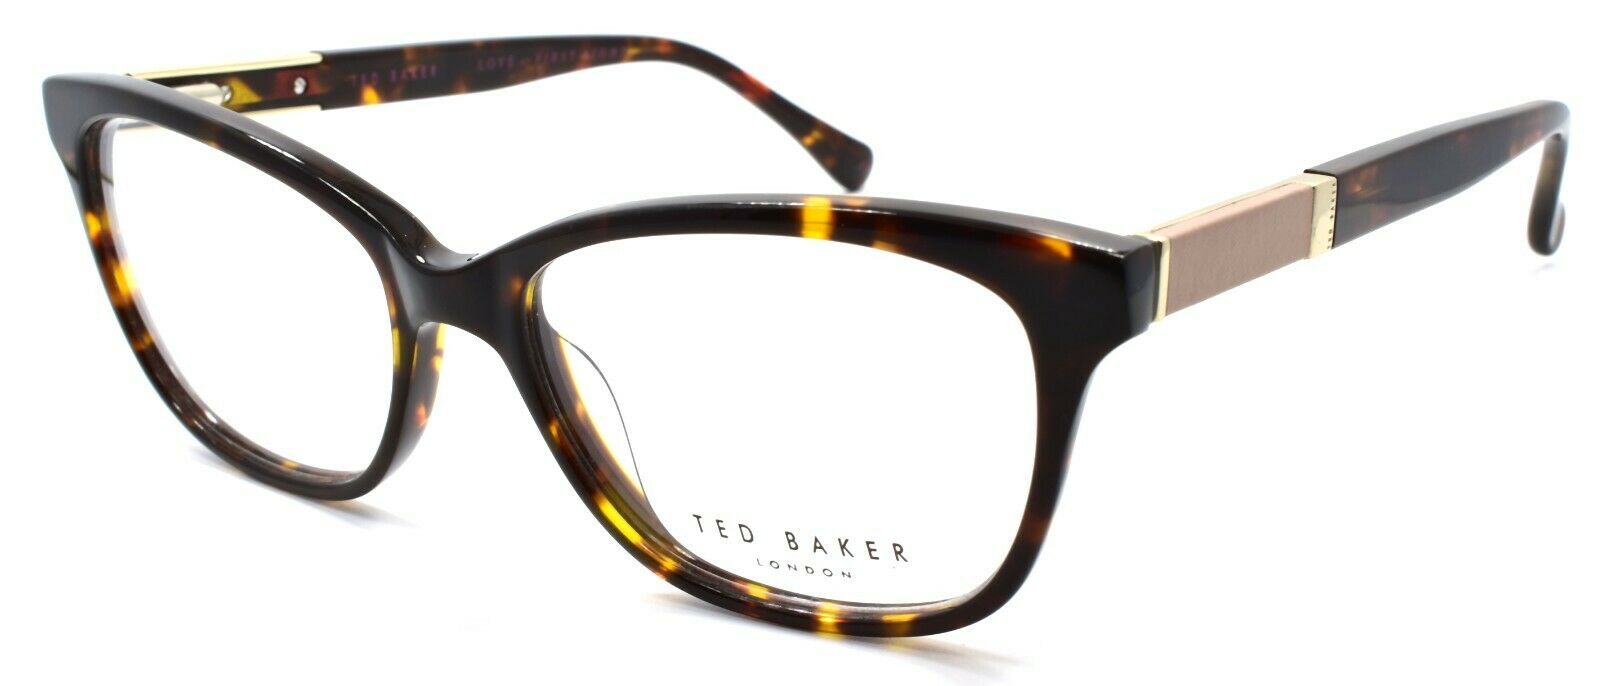 1-Ted Baker Senna 9124 145 Women's Eyeglasses Frames 52-16-140 Brown Tortoise-4894327143832-IKSpecs